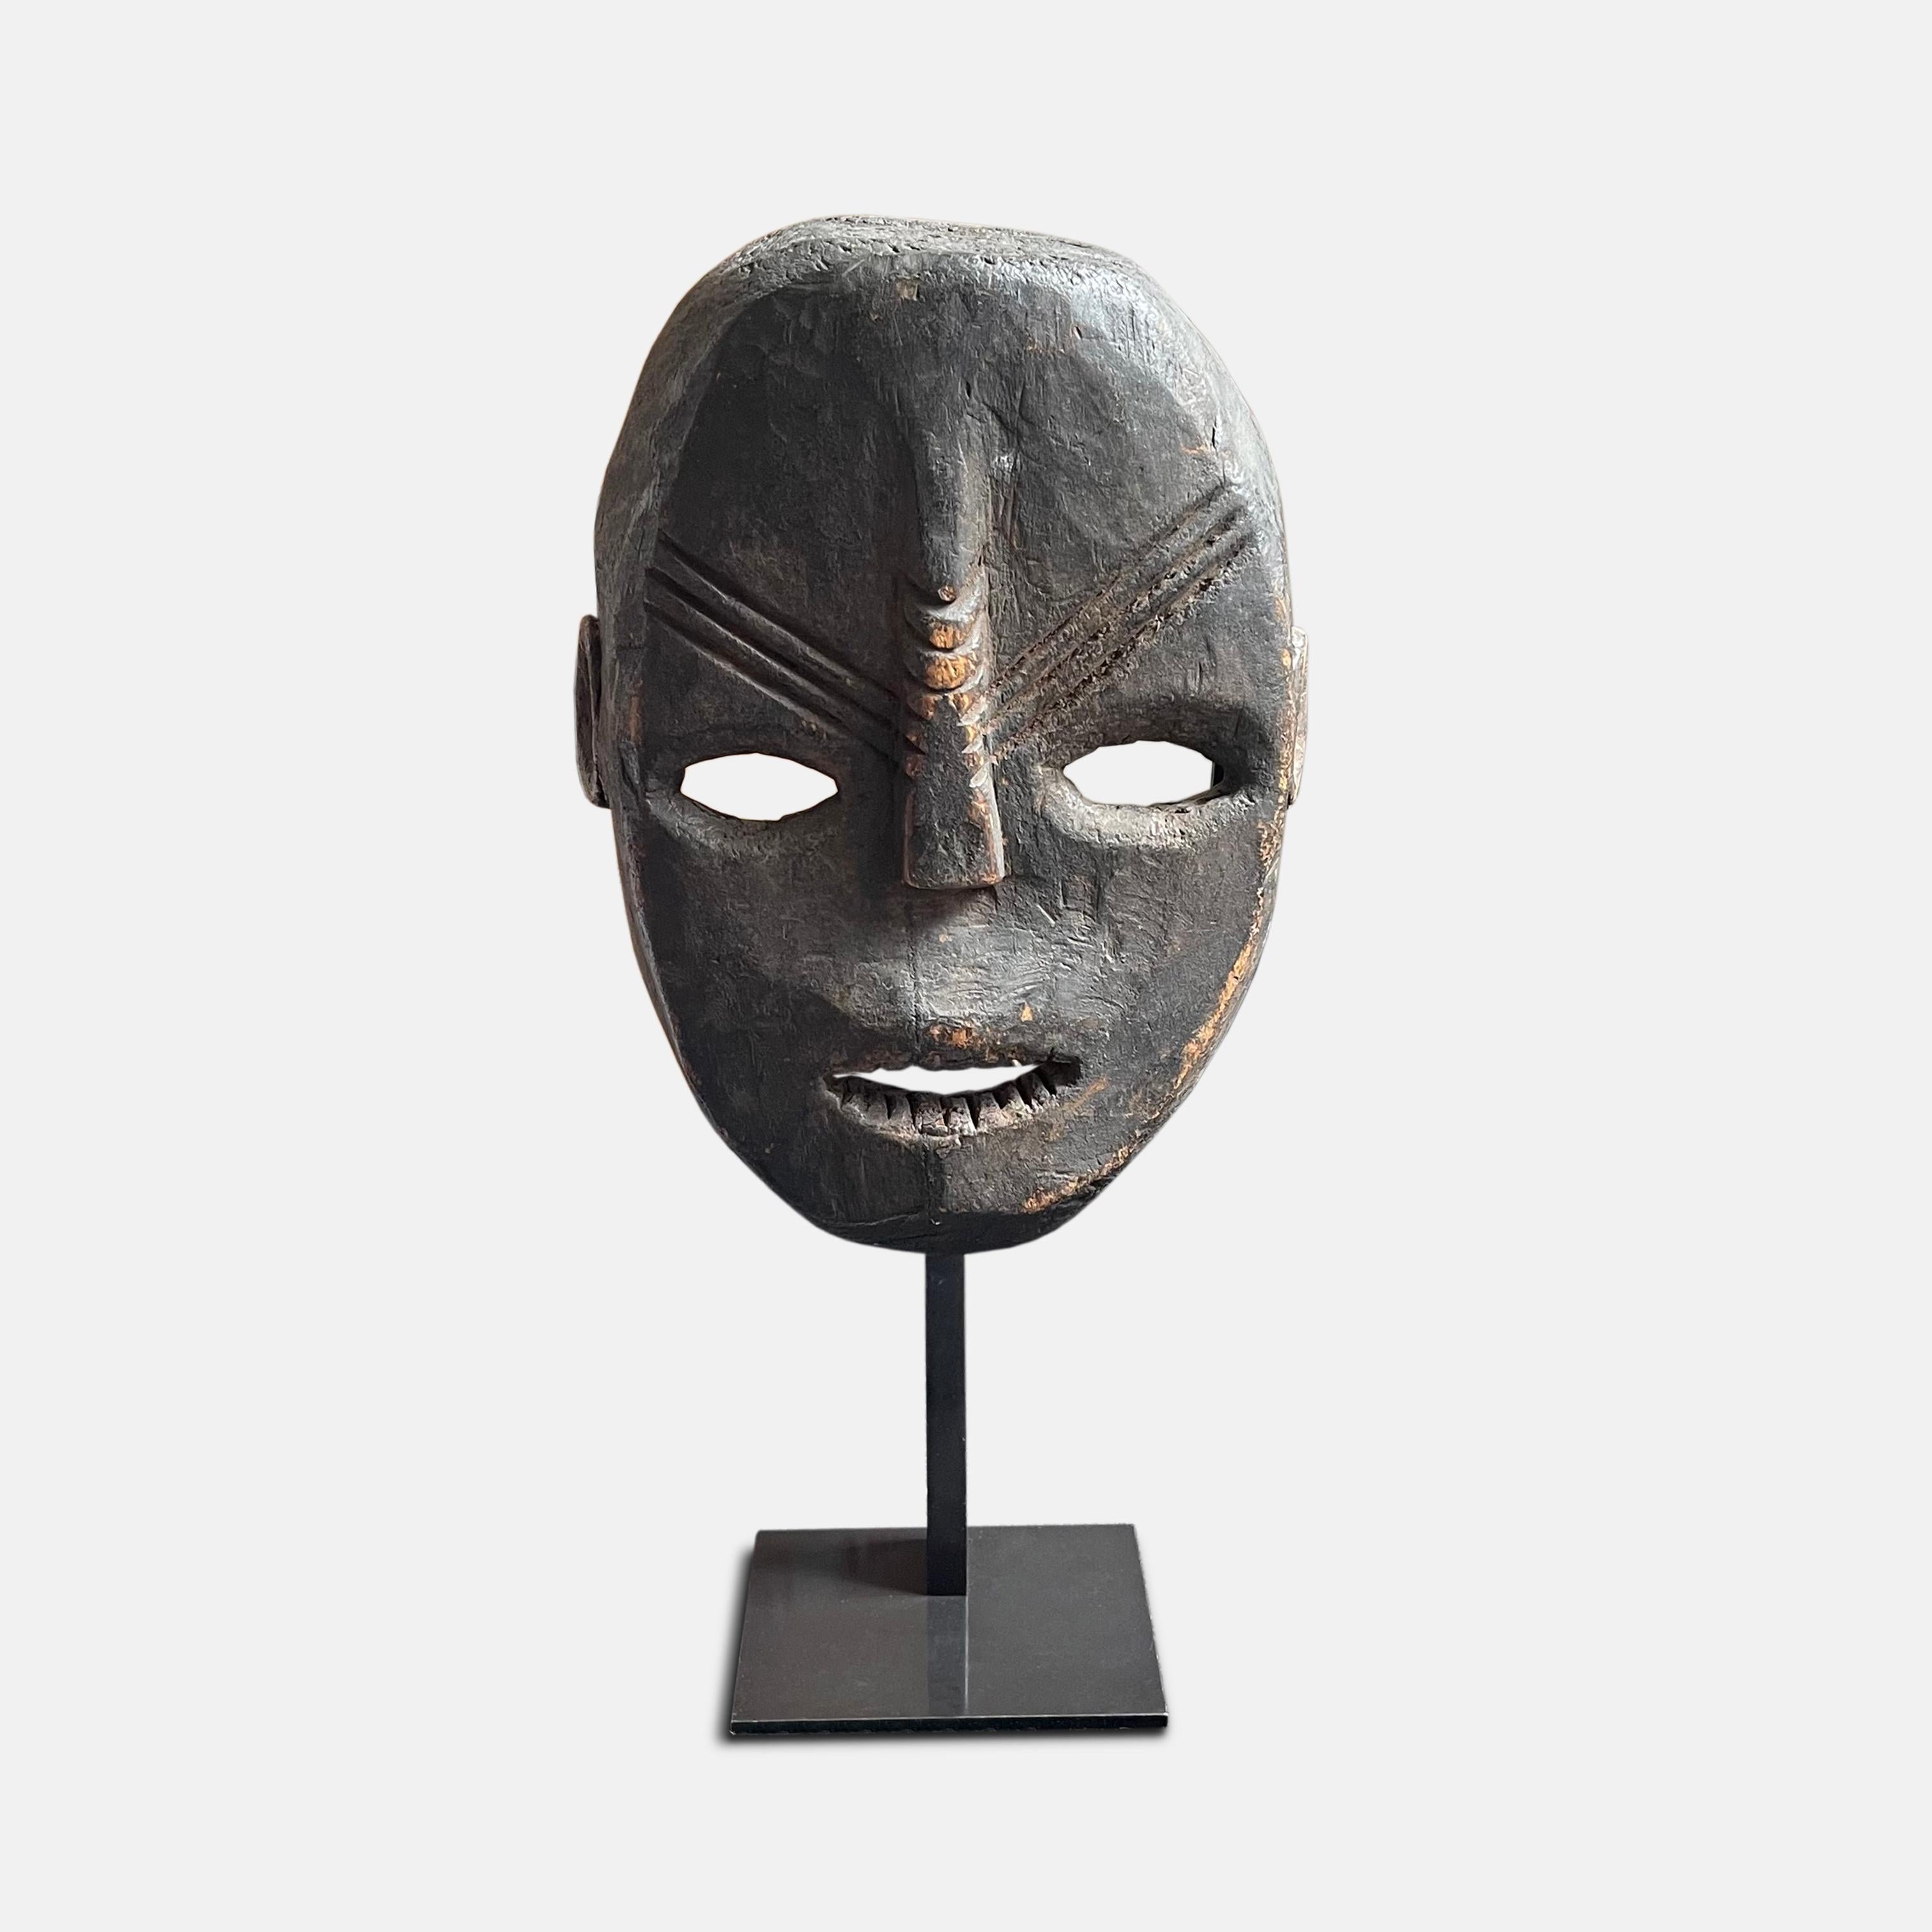 D'une belle patine sombre, ce masque en bois du début du XXe siècle représente un visage humain naturaliste, aplati, avec le front, la bouche ouverte et les dents stylisées en léger relief. Le nez allongé et strié et les crêtes diagonales sur le